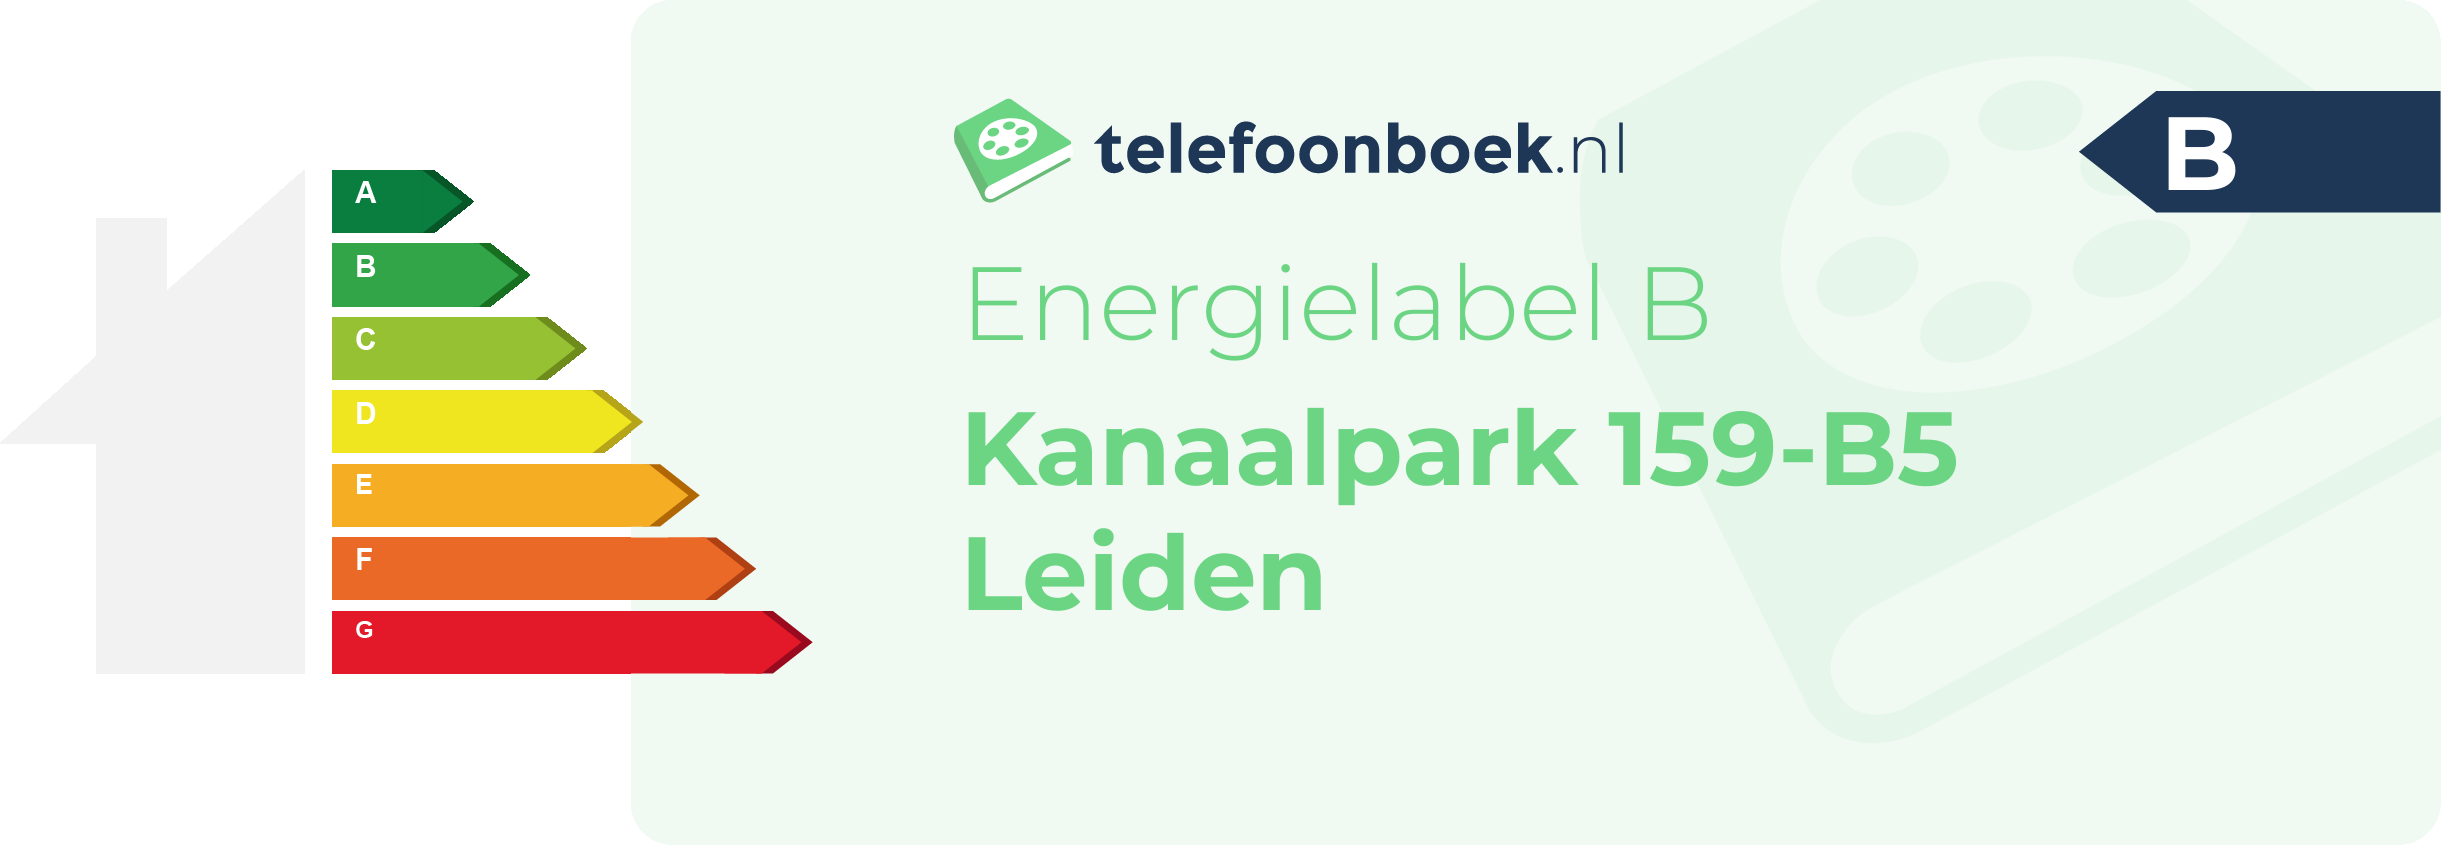 Energielabel Kanaalpark 159-B5 Leiden